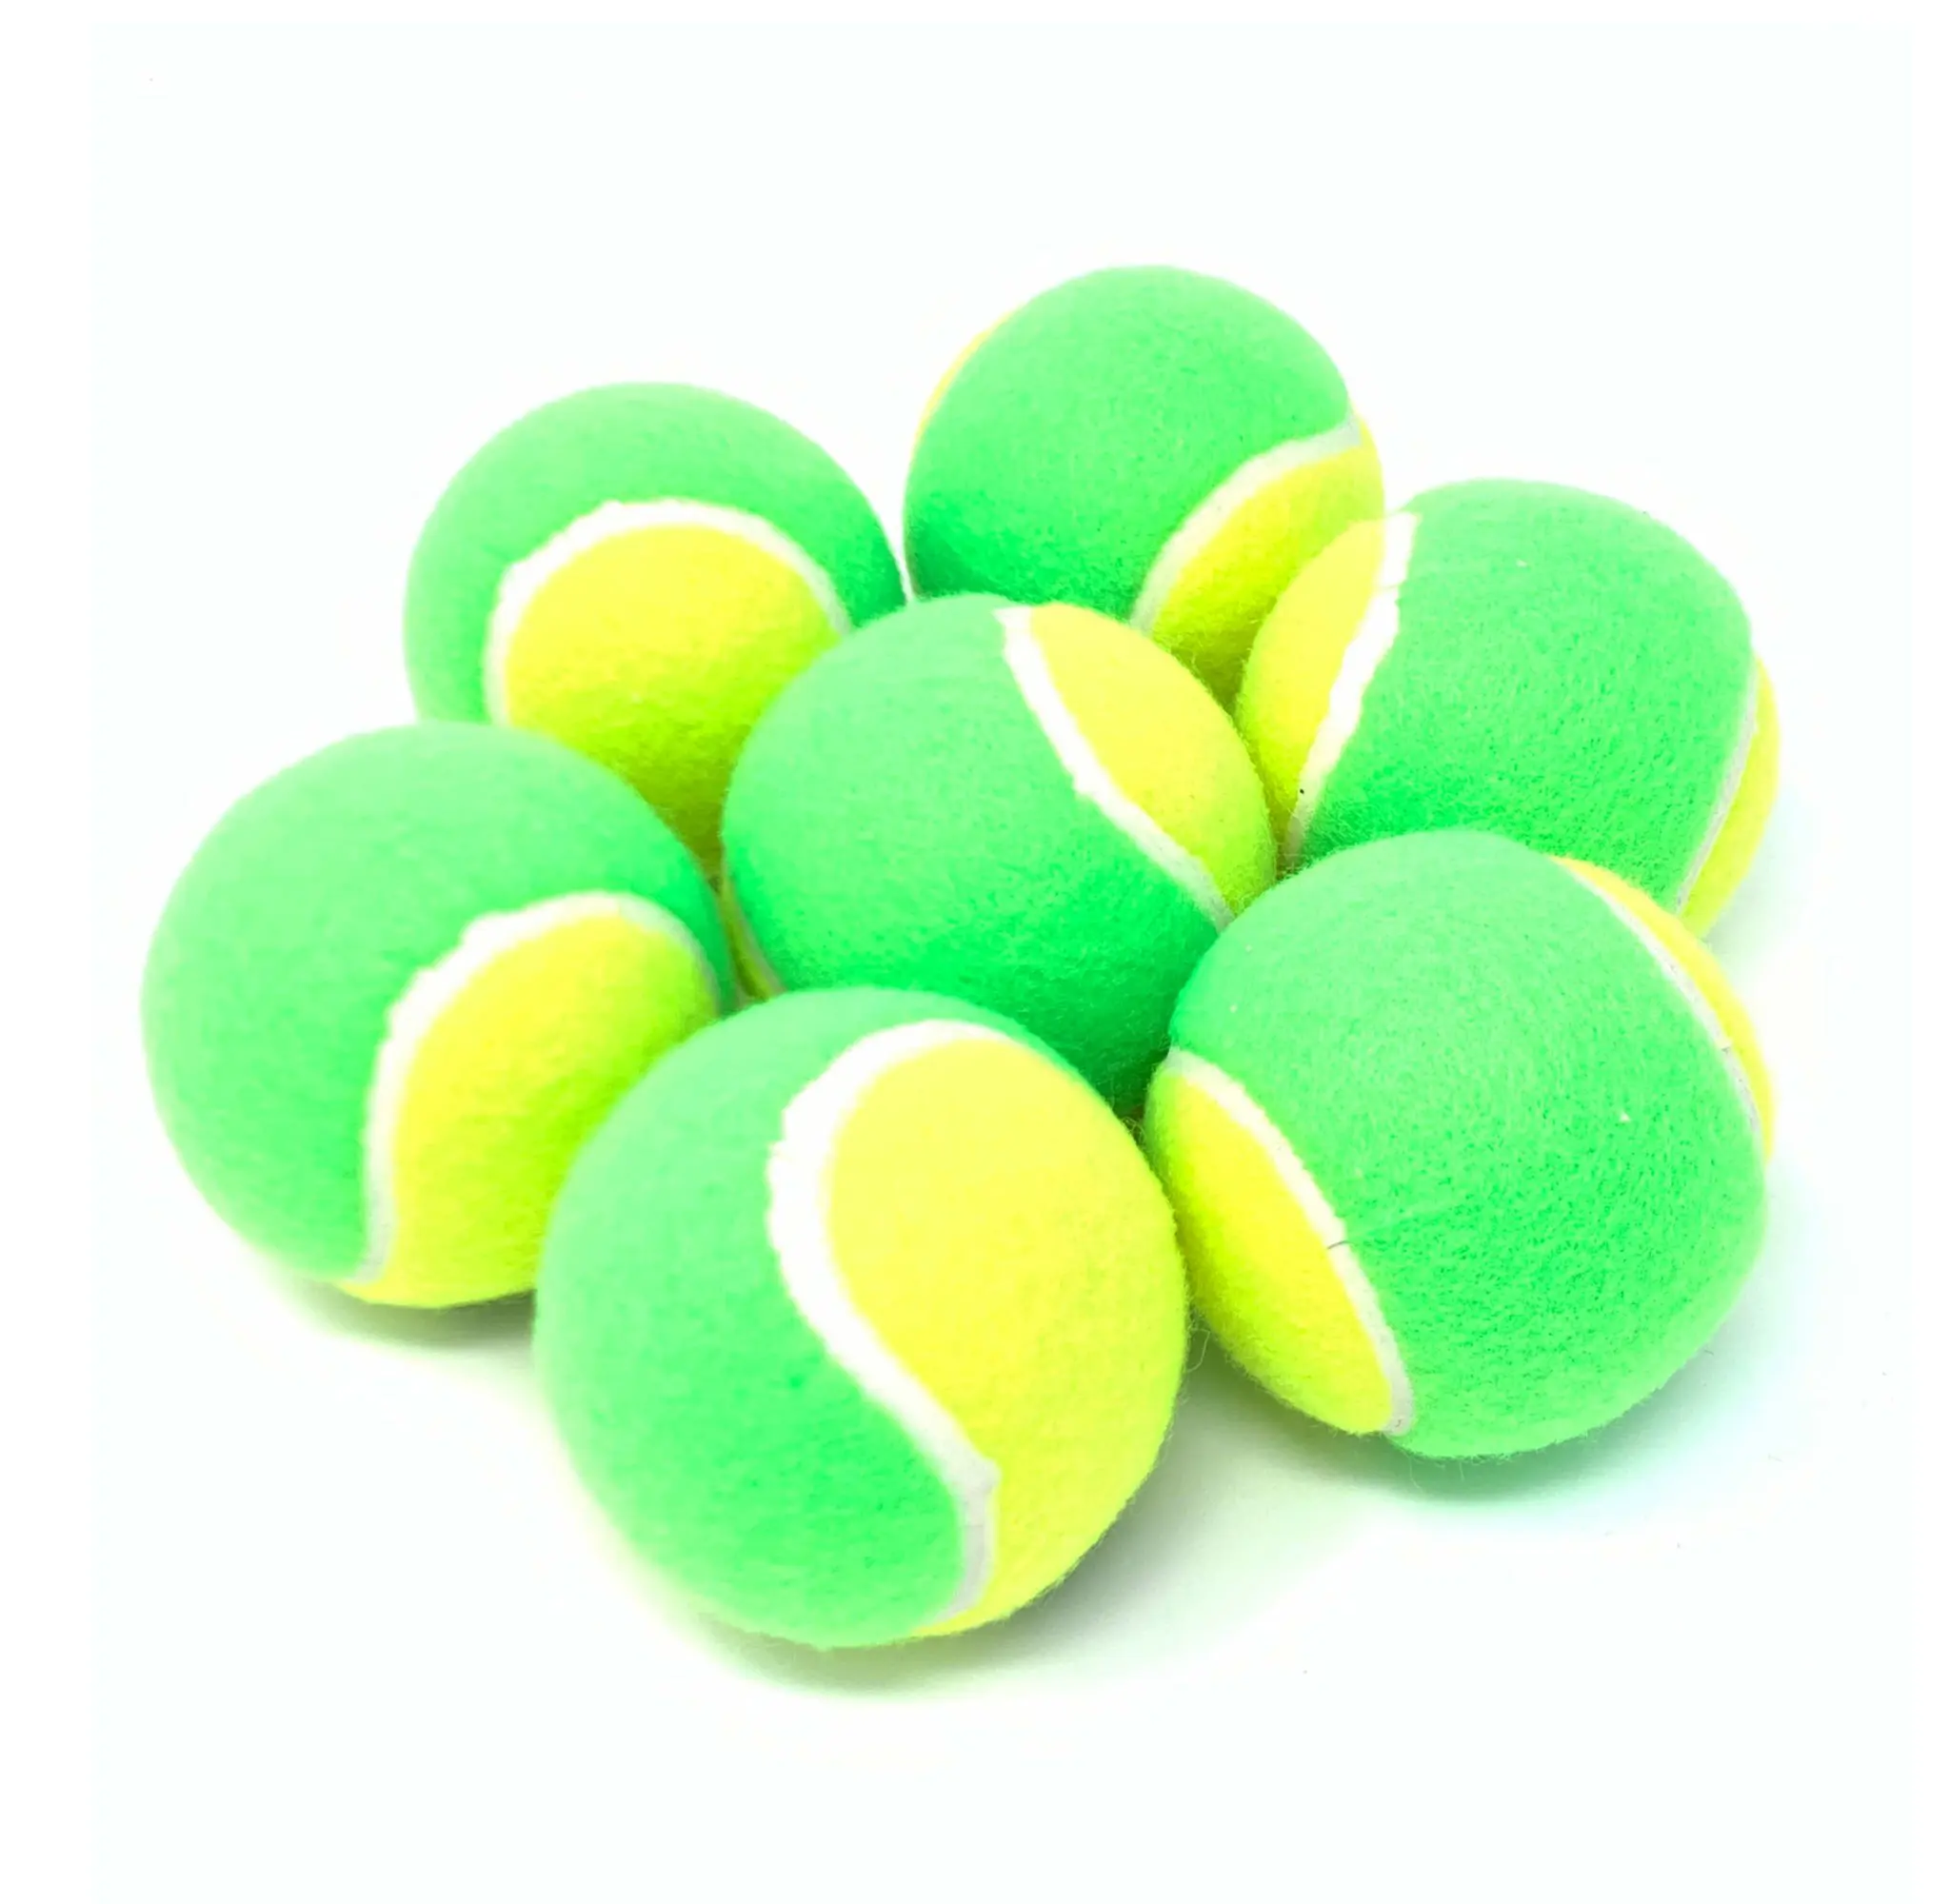 Großhandel professioneller Cricket-Ball 70 g Premium-Qualität Cricket-Tennis-Ball individuell hergestellt Großhandel